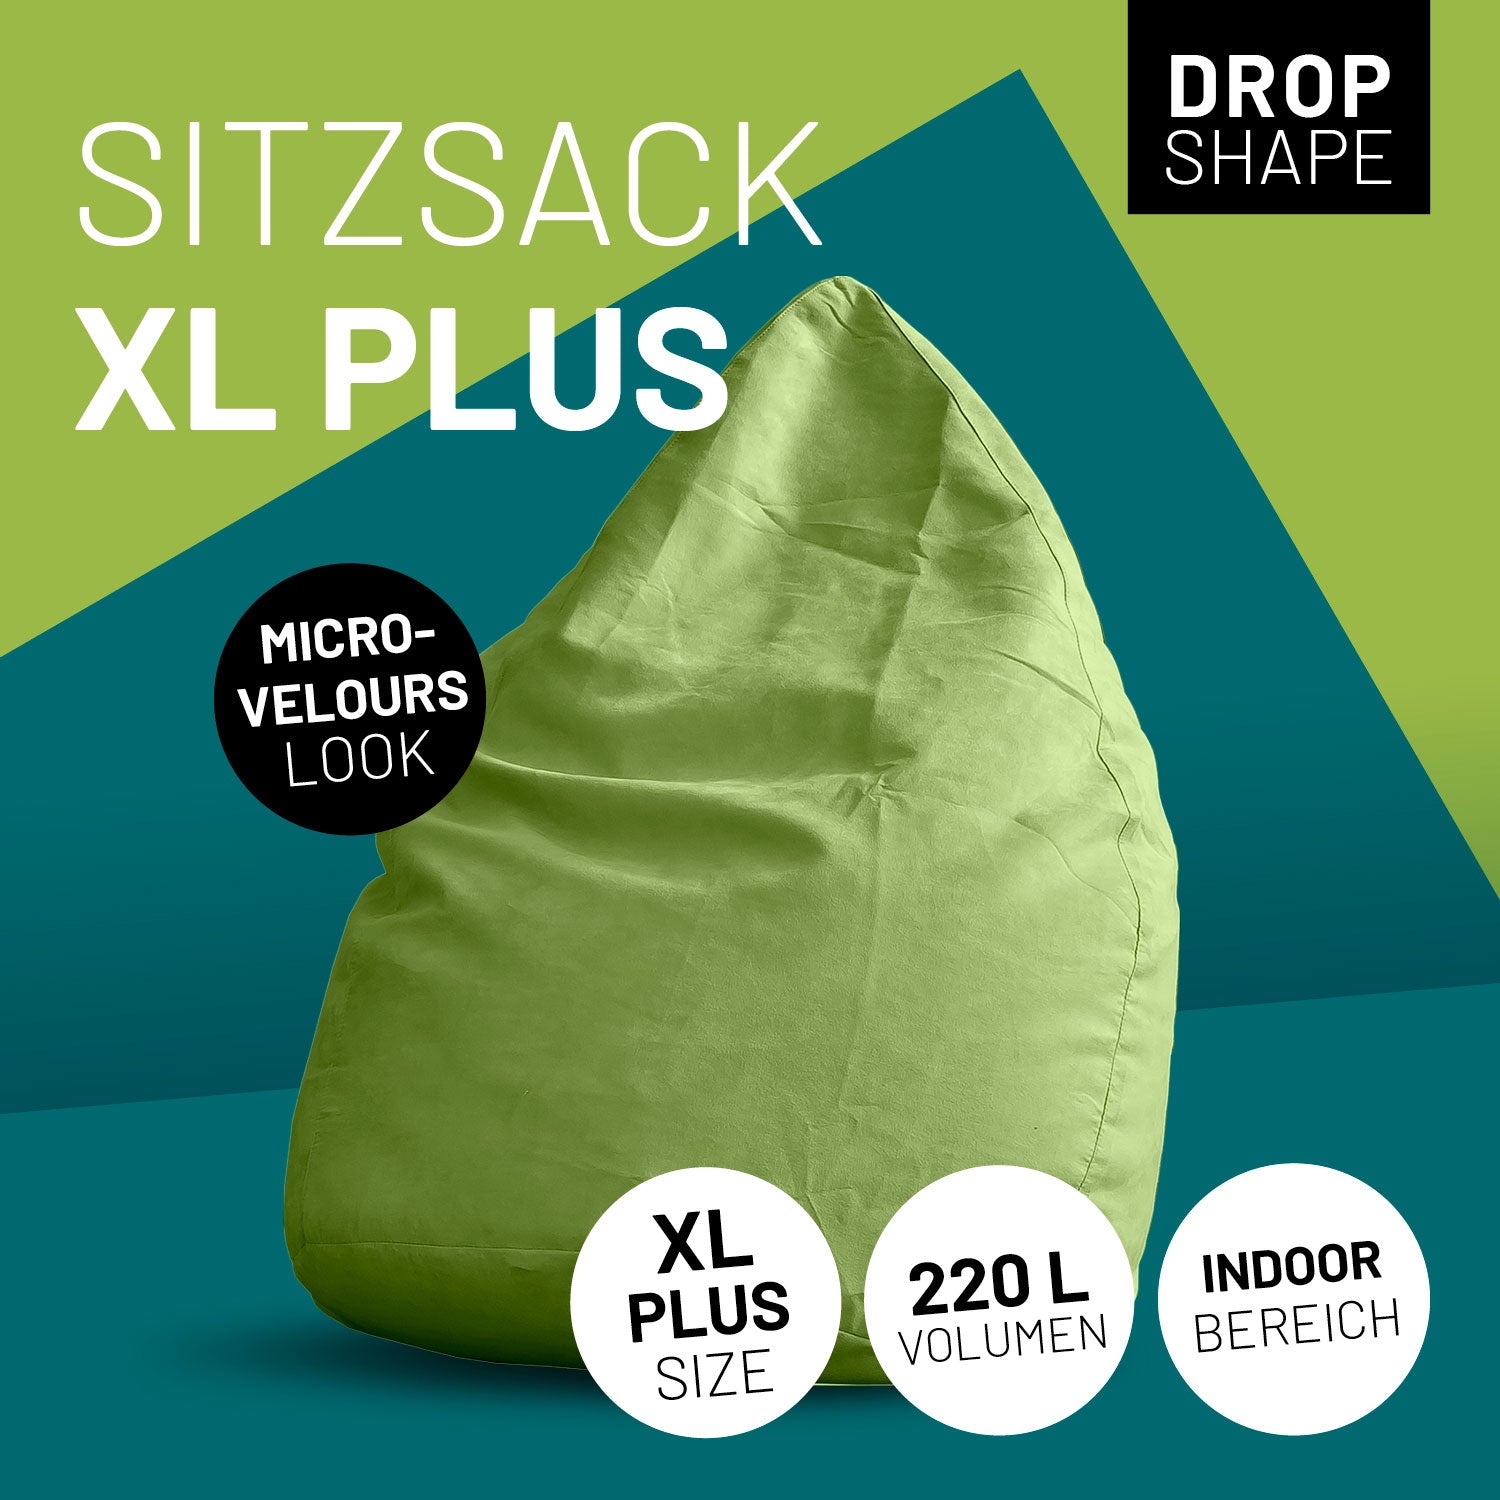 Luxury XL PLUS Sitzsack stylischer Beanbag - 220L Füllung mit extra starken Nähten - Grün